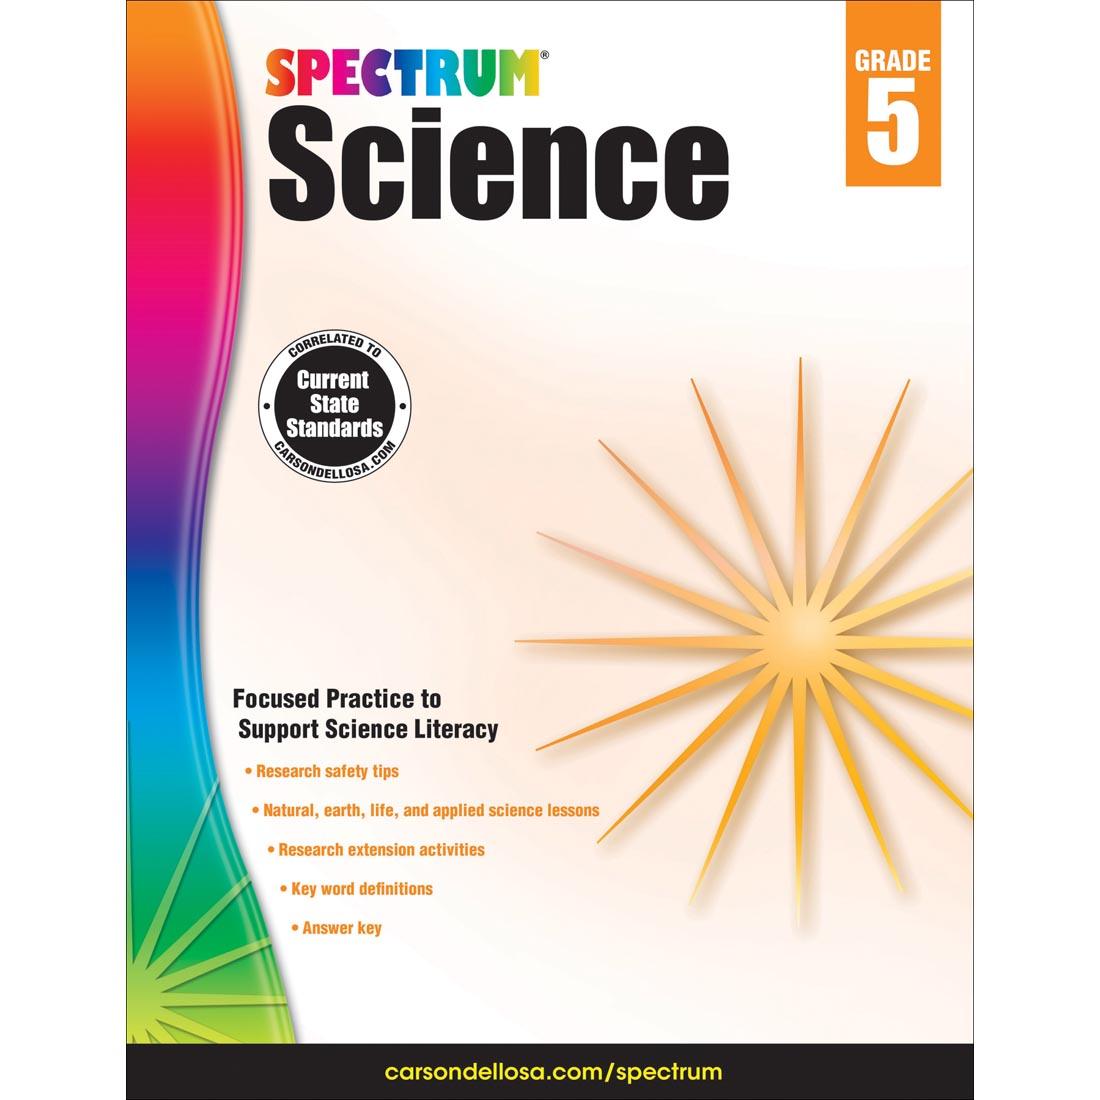 Spectrum Science by Carson Dellosa Grade 5